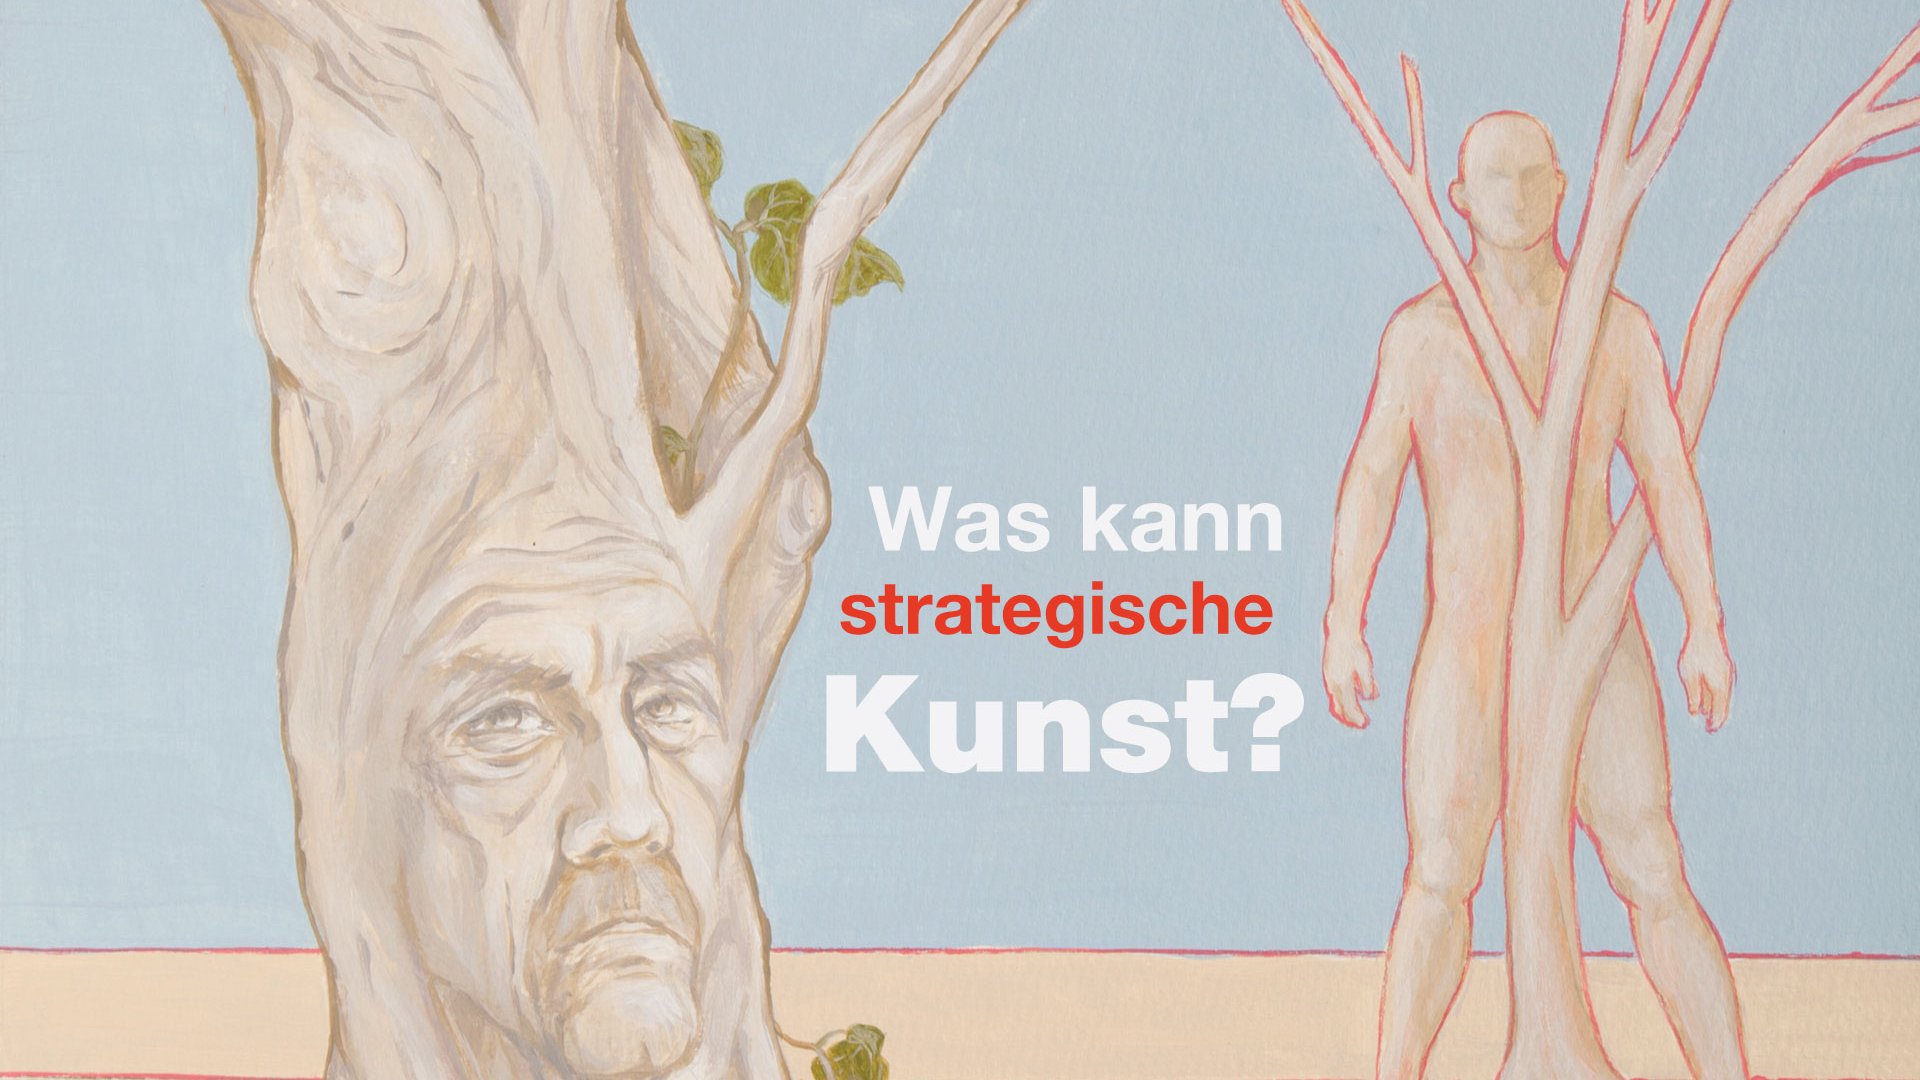 BURN-IN Strategische Kunst | Kunst-Branding | Eva Pisa